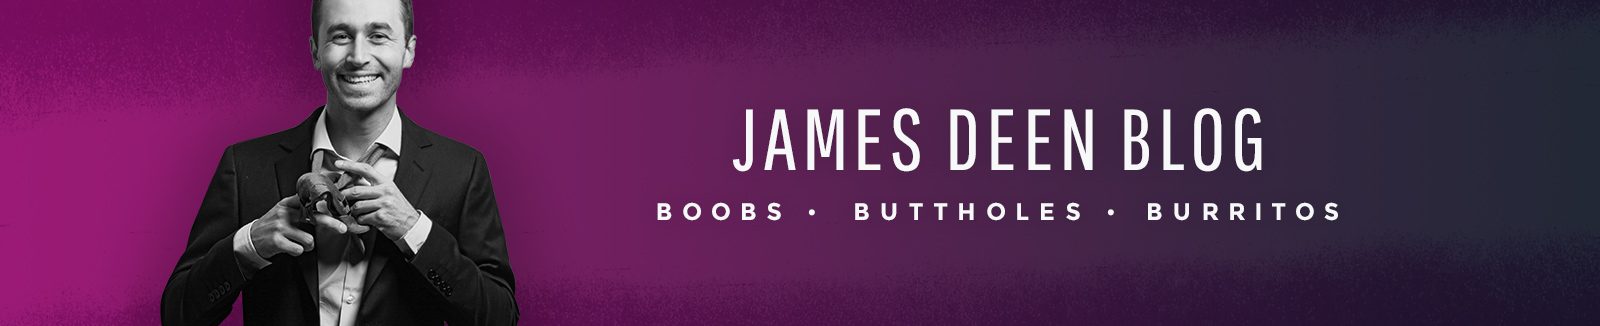 James Deen Blog